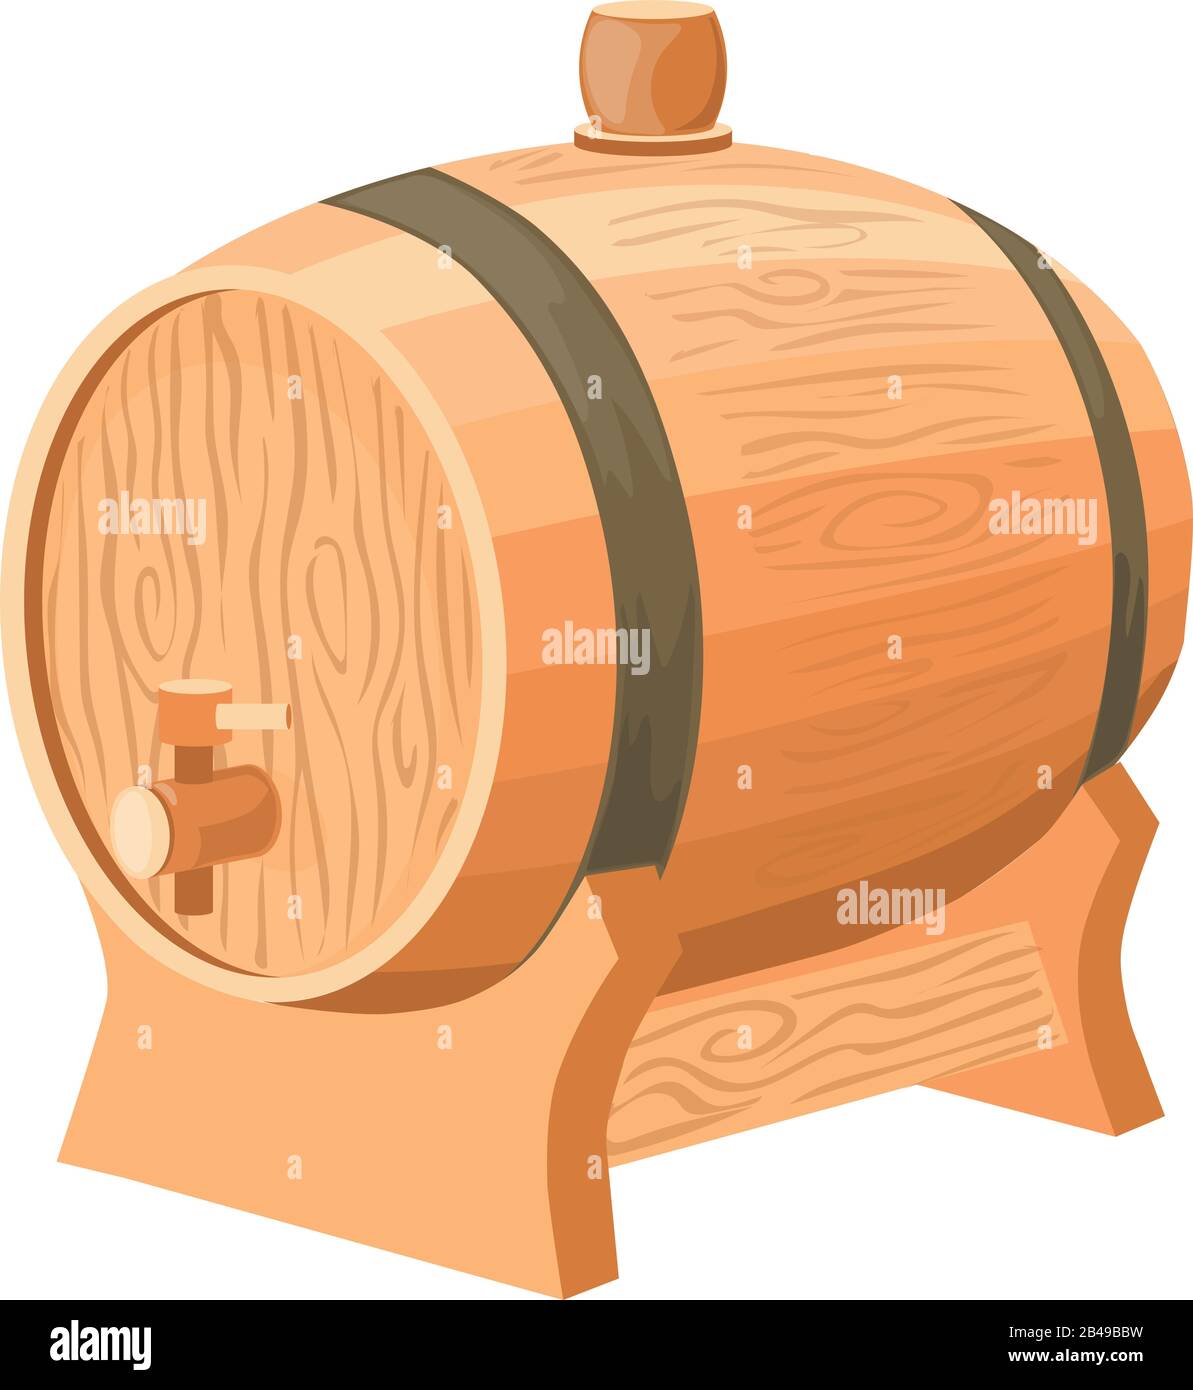 Illustrazione della botte di vino, con vettore di fondo bianco Illustrazione Vettoriale